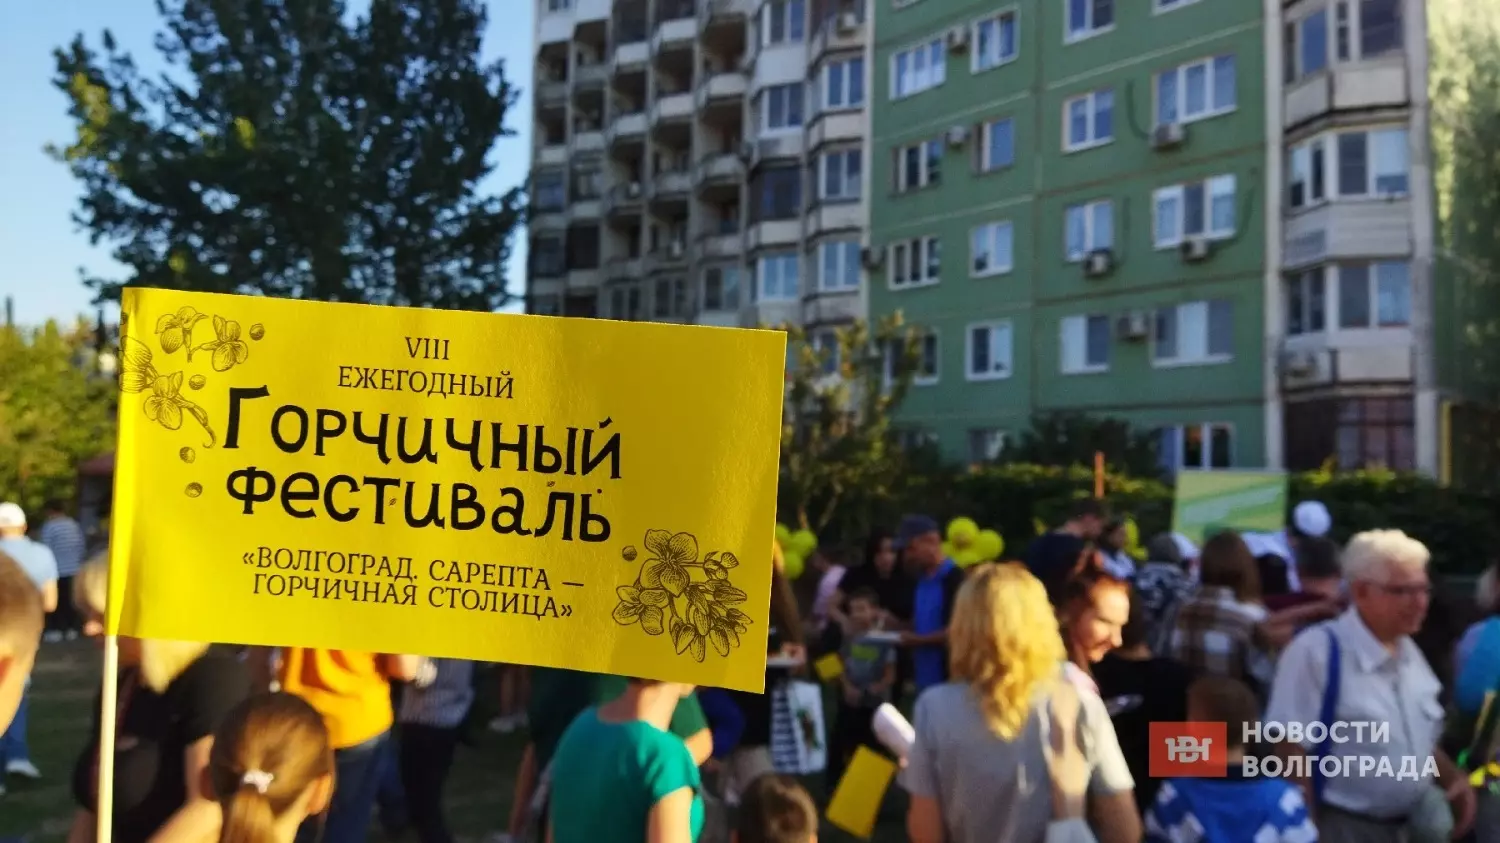 Горчичный фестиваль прошел на самом юге Волгограда - в Красноармейском районе